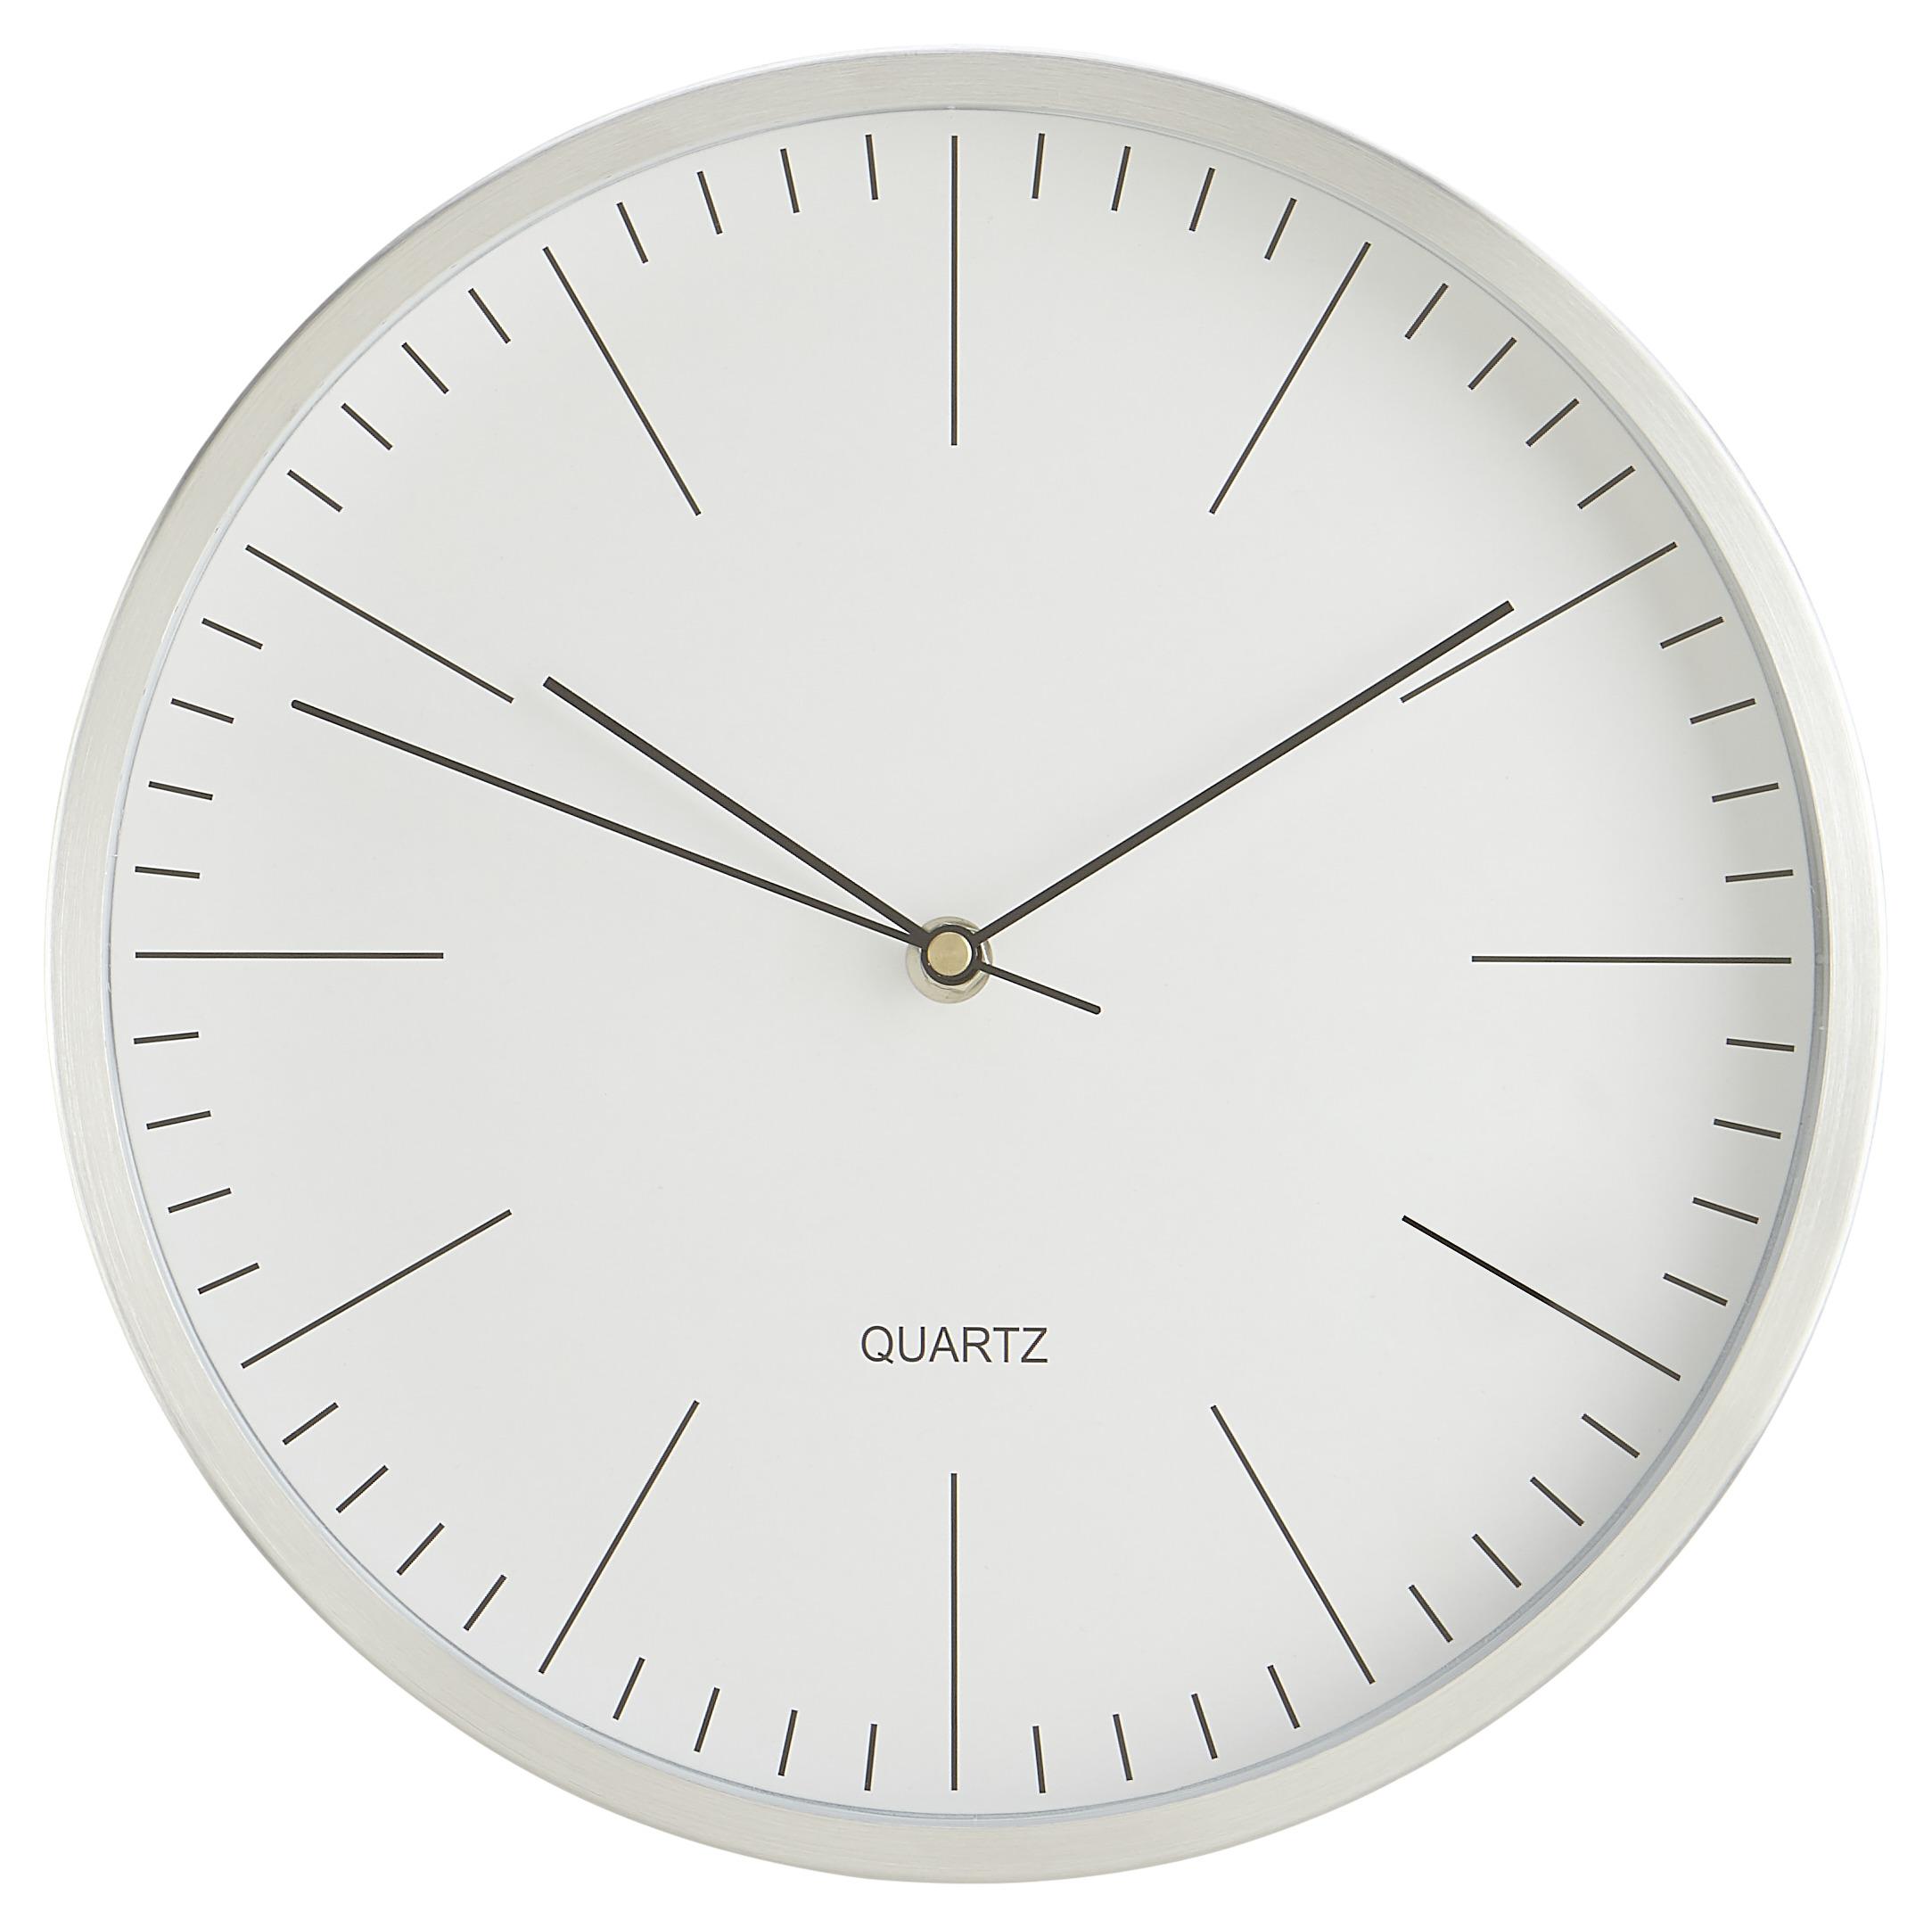 Uhr Rena in Silber/ Weiss ca.Ø29,6cm - Silberfarben/Weiß, MODERN, Glas/Metall (29,6cm) - Bessagi Home